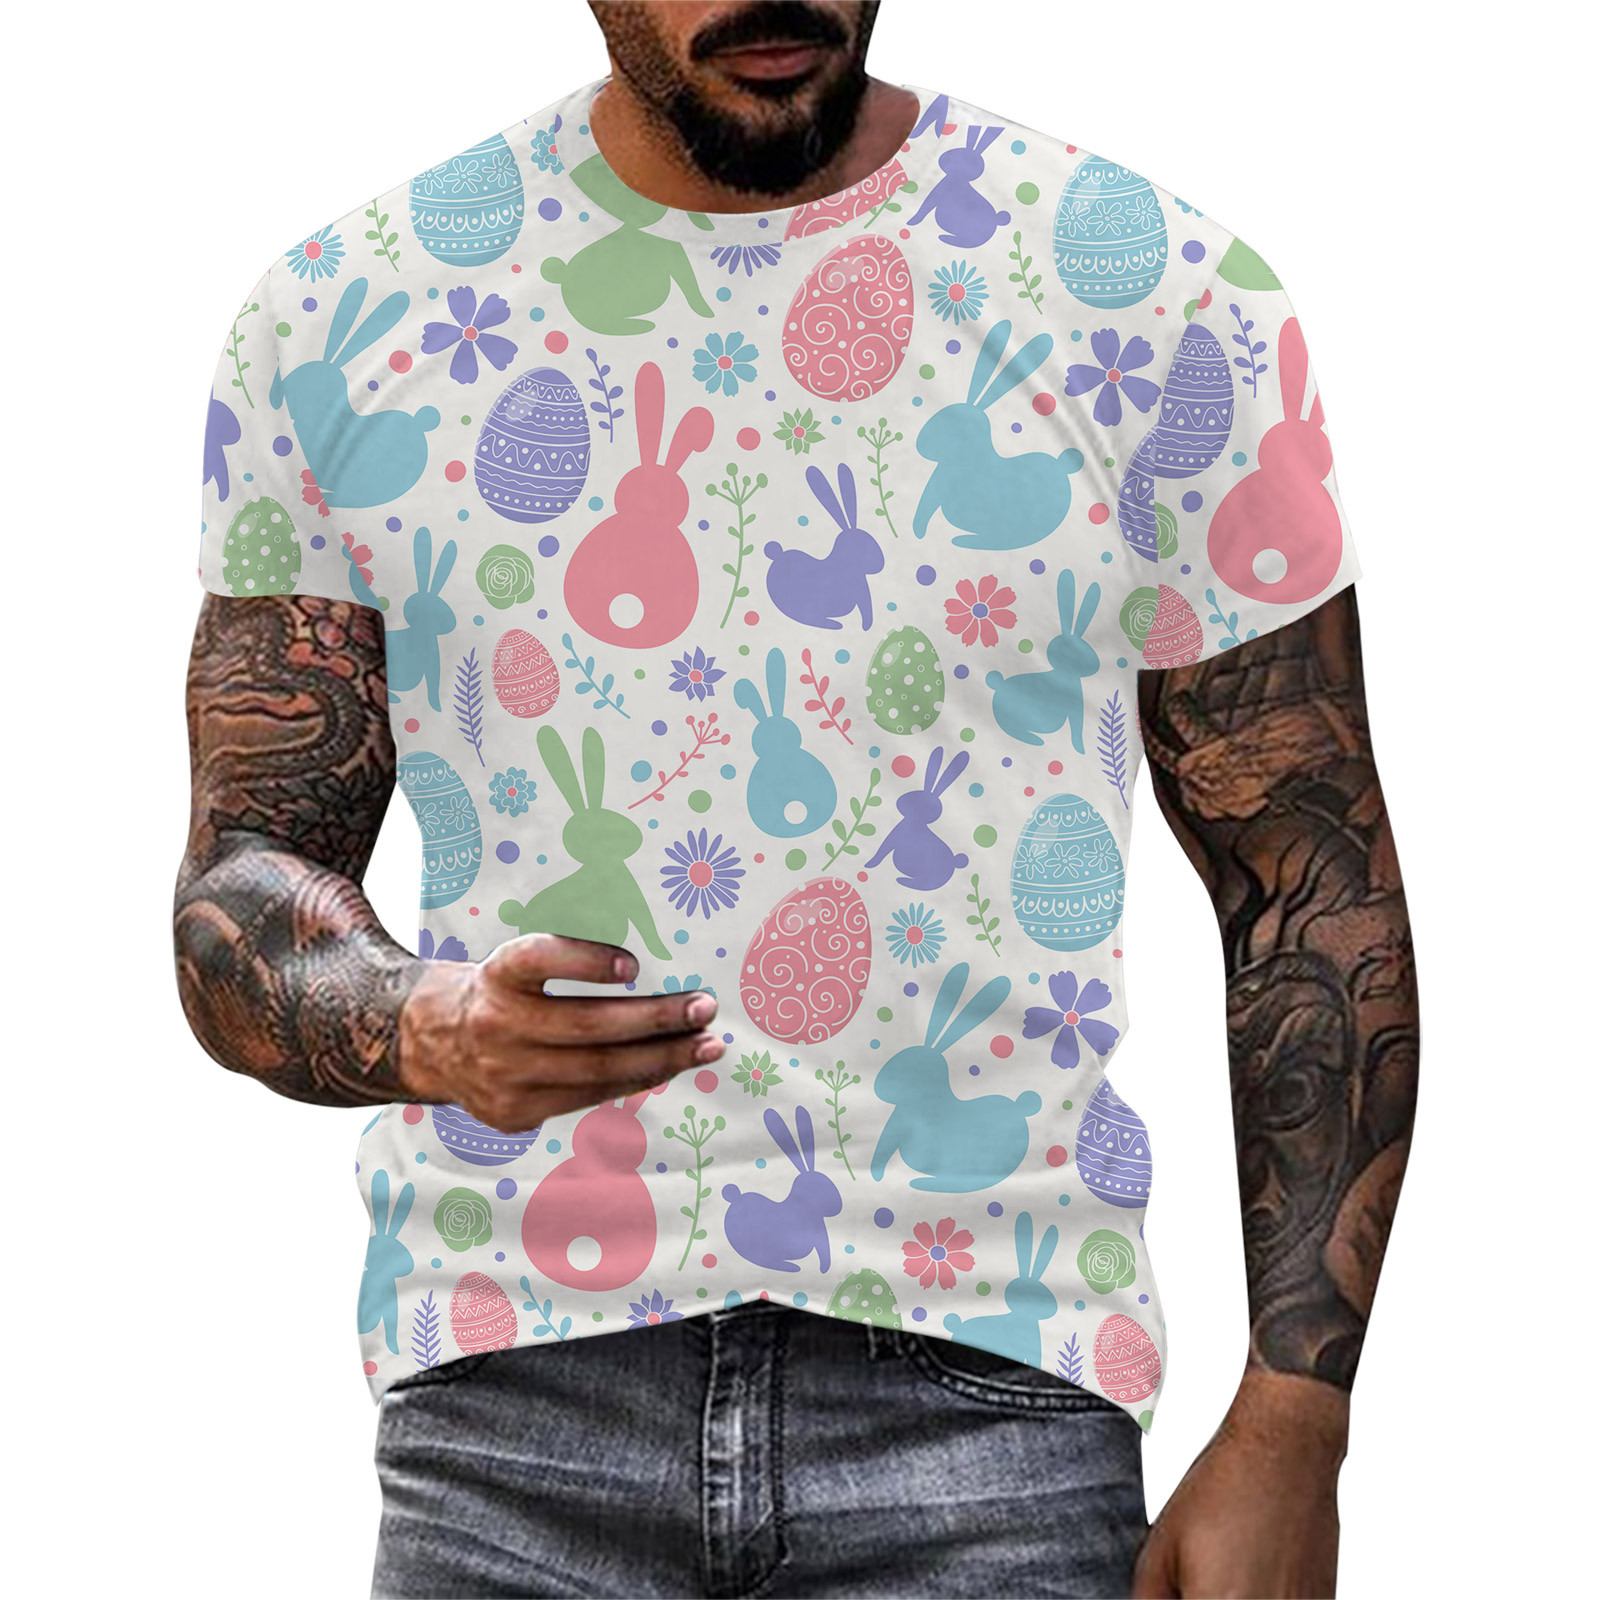 AdBFJAF Tshirts Shirts for Men Pack Multi Color Mens Easter Fashion ...